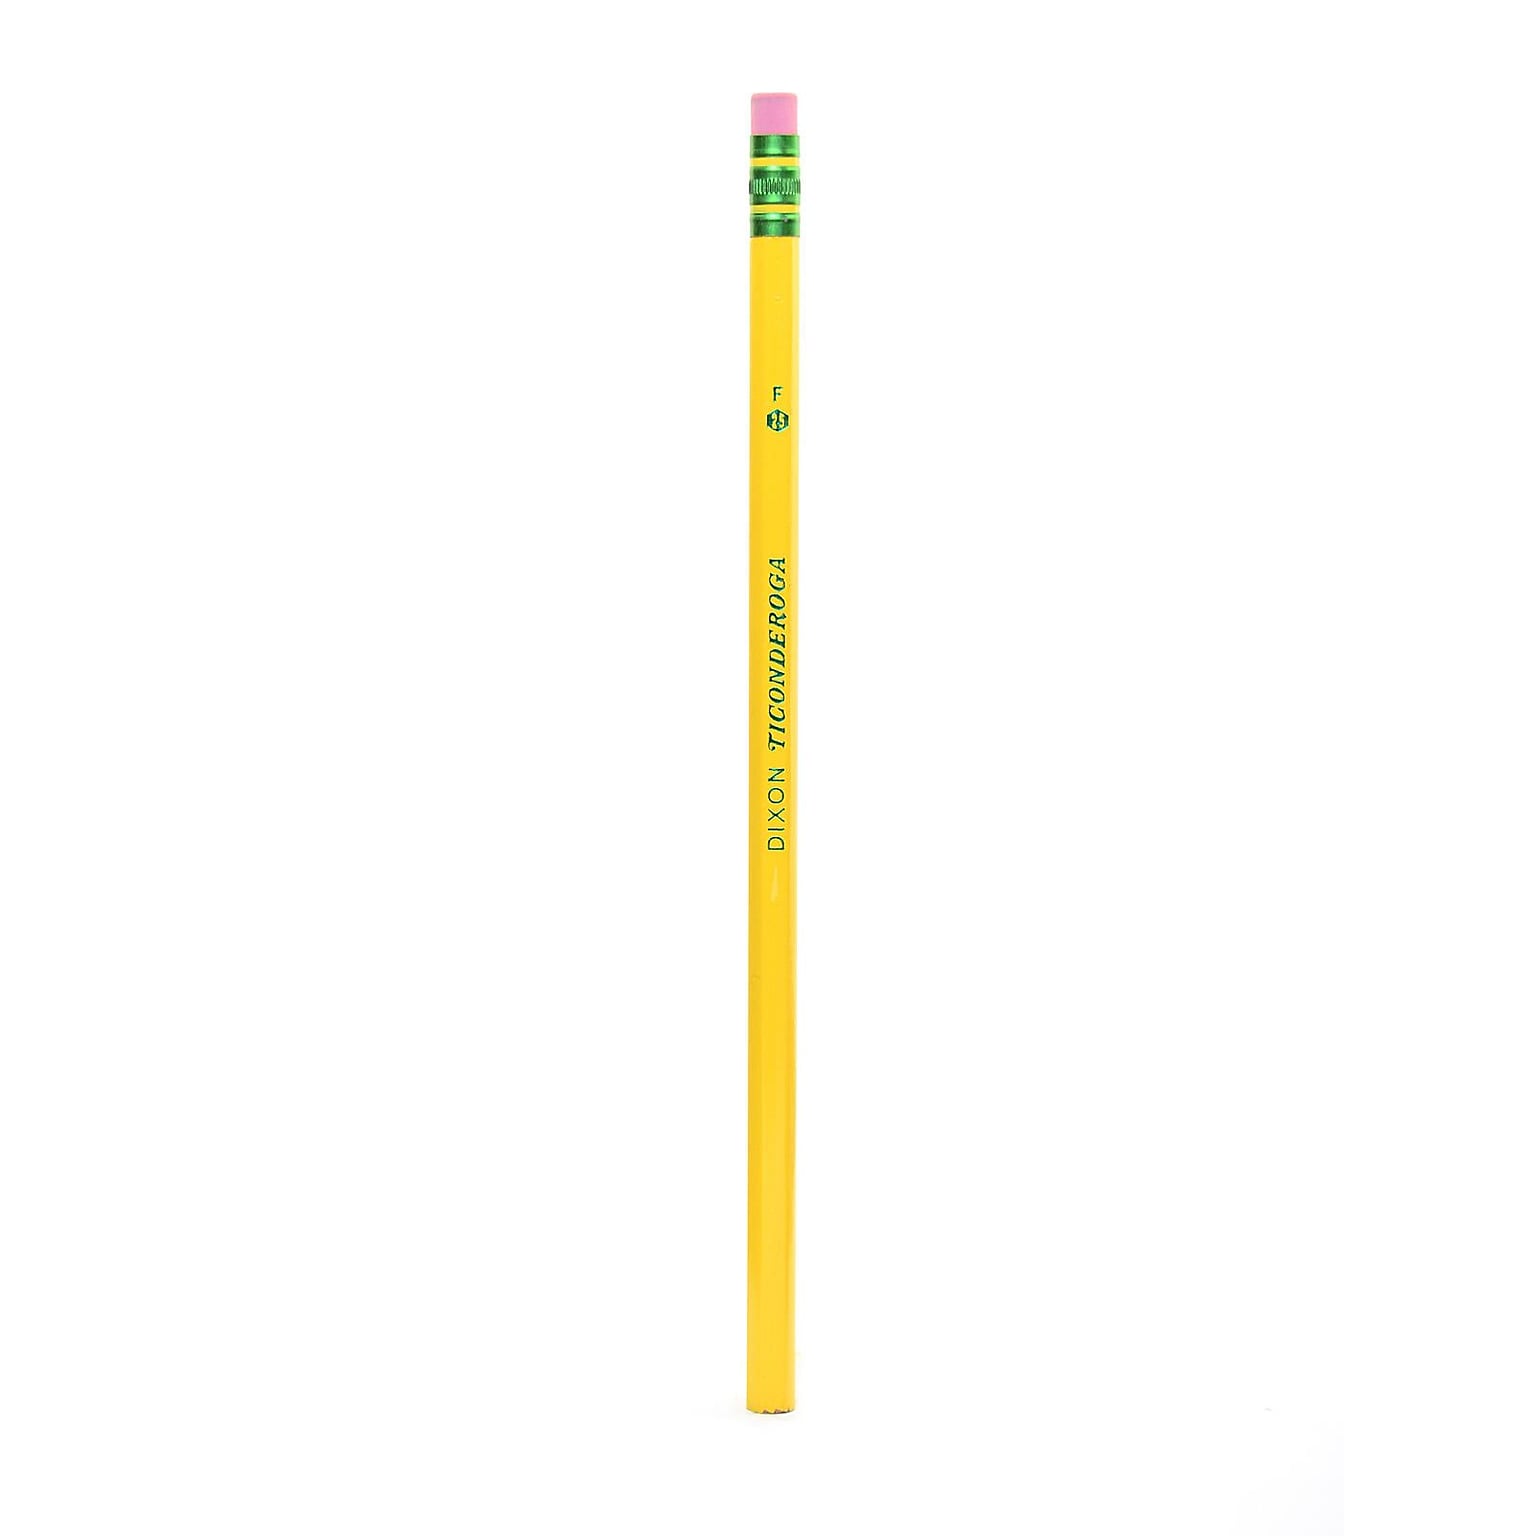 Dixon Ticonderoga Pencils No. 2 1/2 Medium Pack of 48